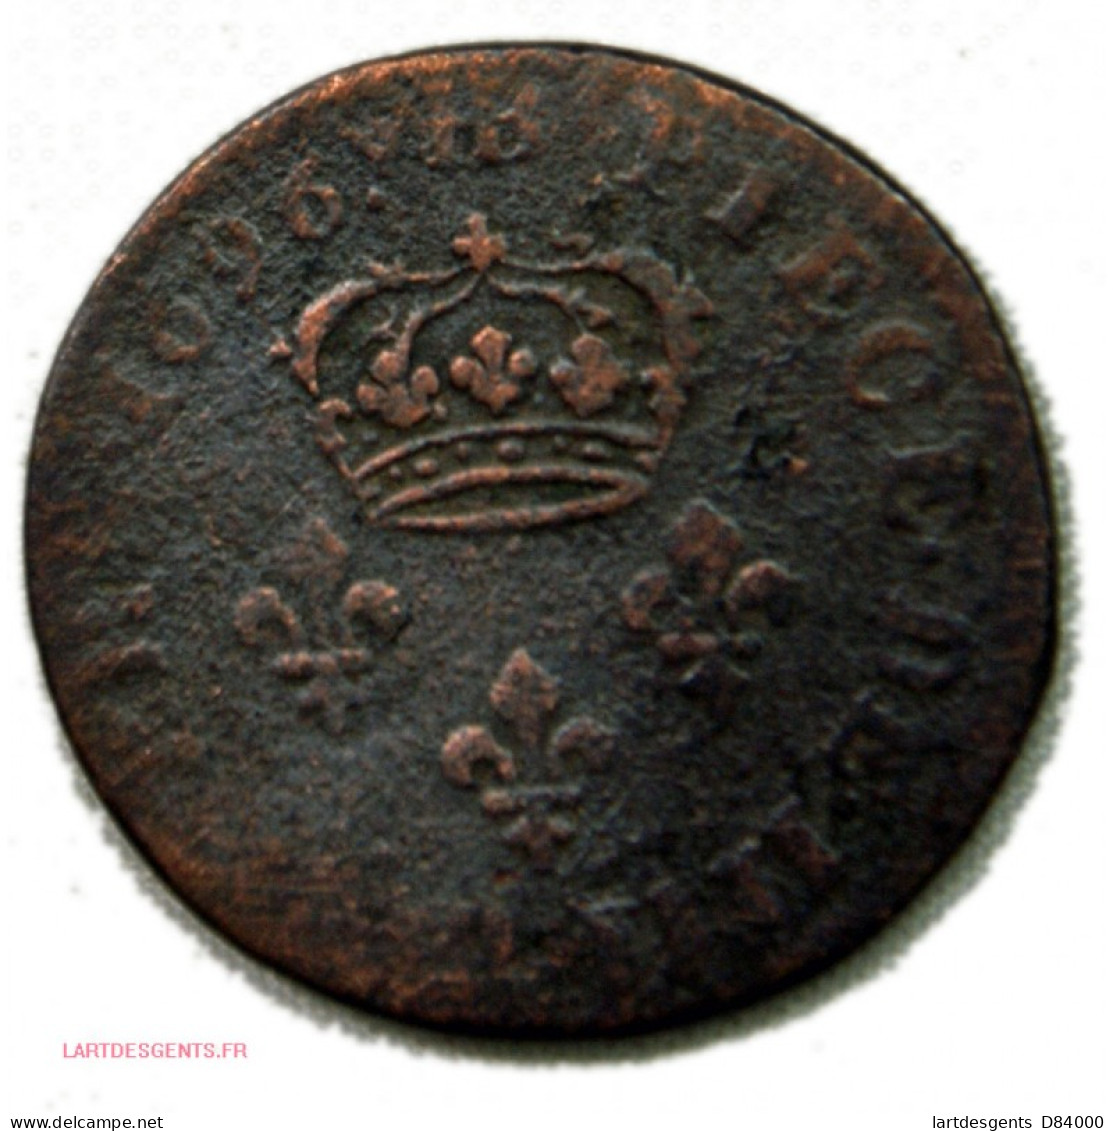 Louis XIIII 4 DENIERS 1696 BB + 1707 BB, Lartdesgents - 1610-1643 Louis XIII The Just